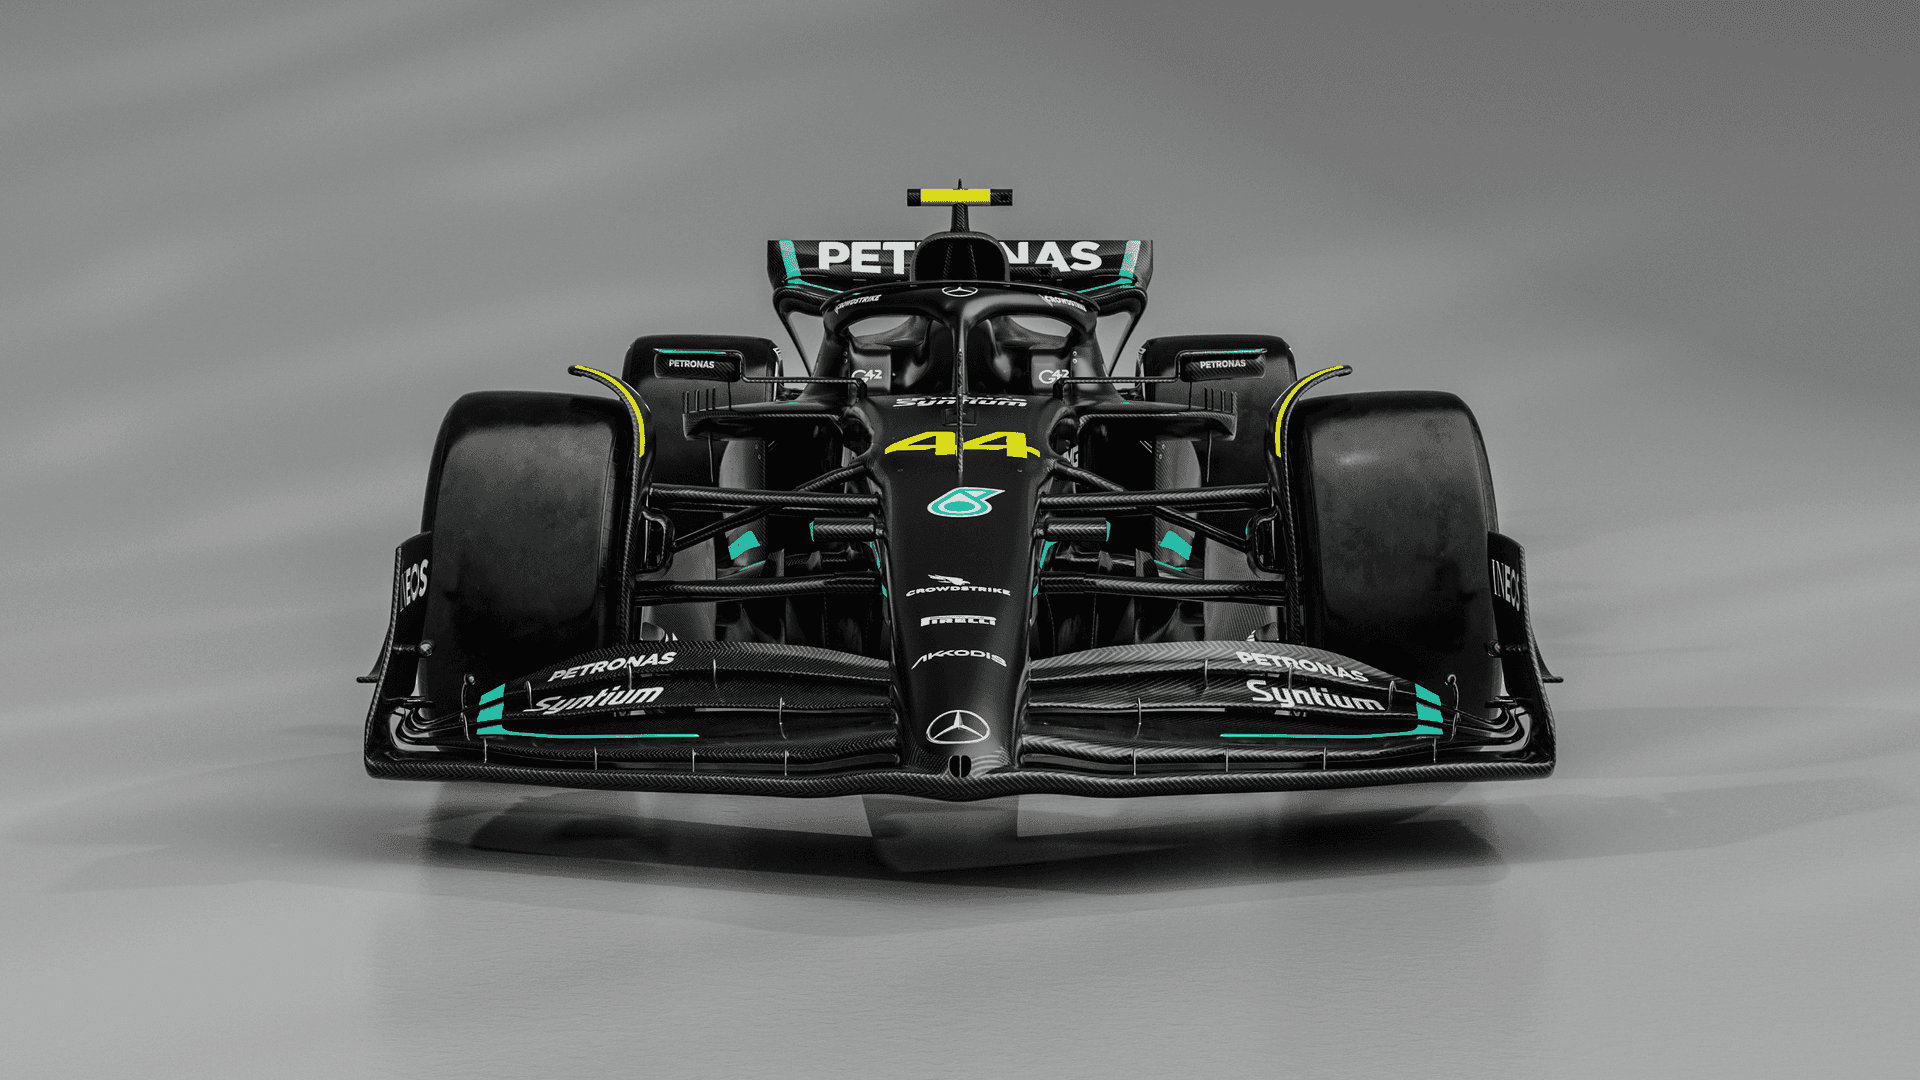 Mercedesf1-bil - F1 2019